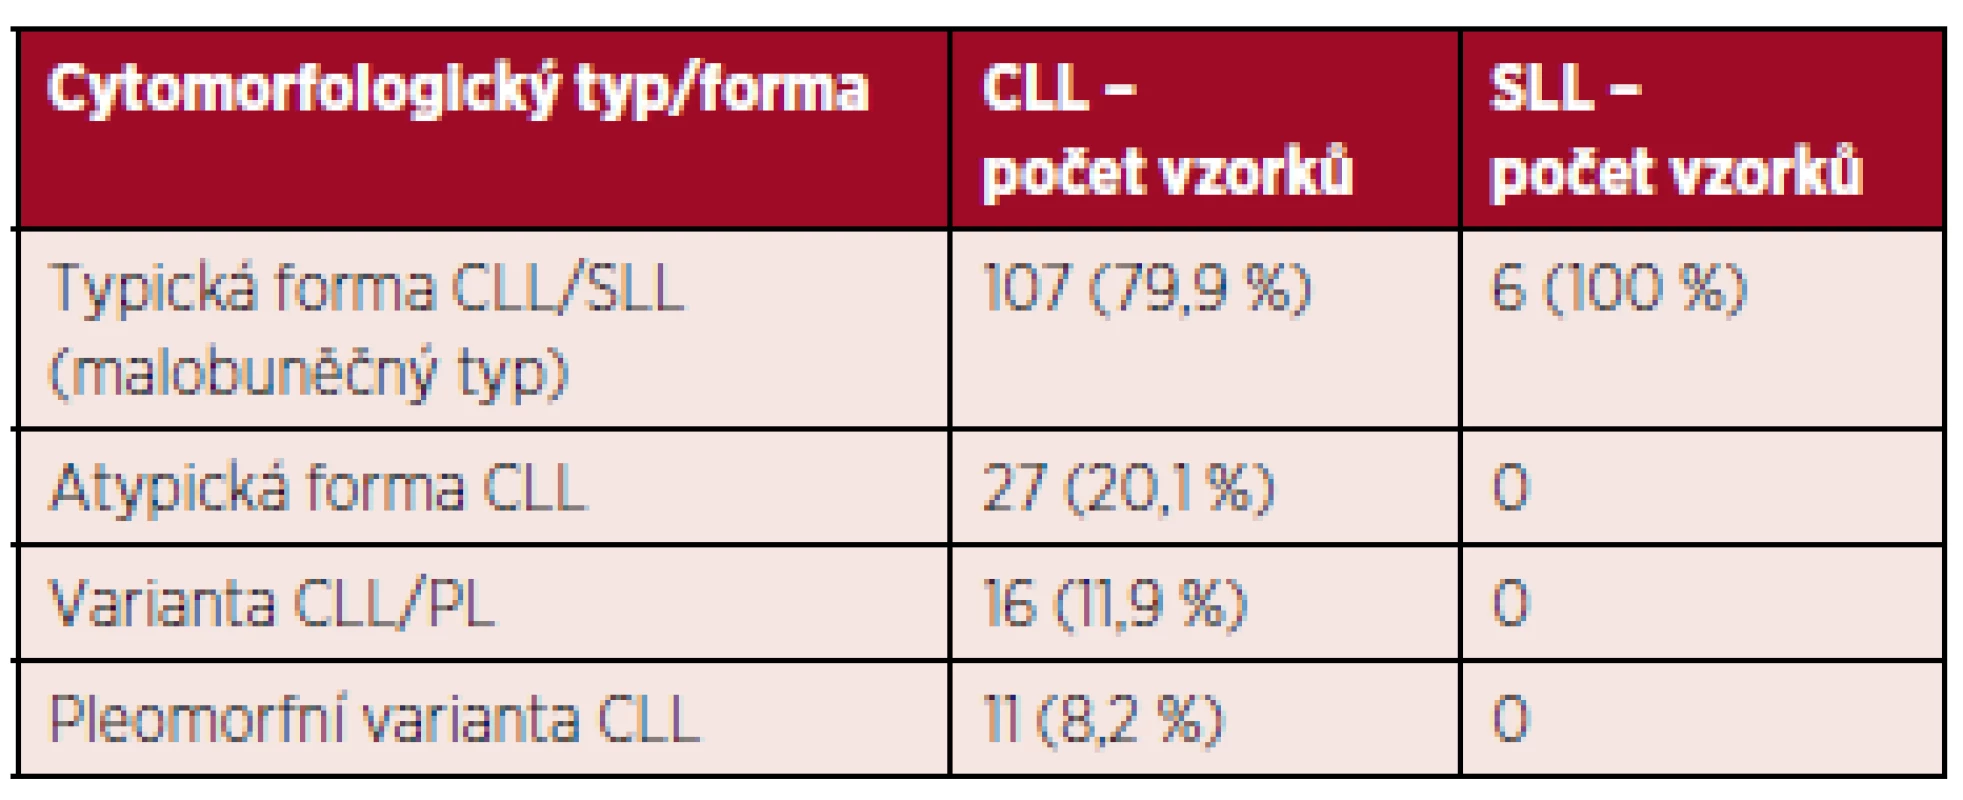 Cytomorfologie CLL/SLL